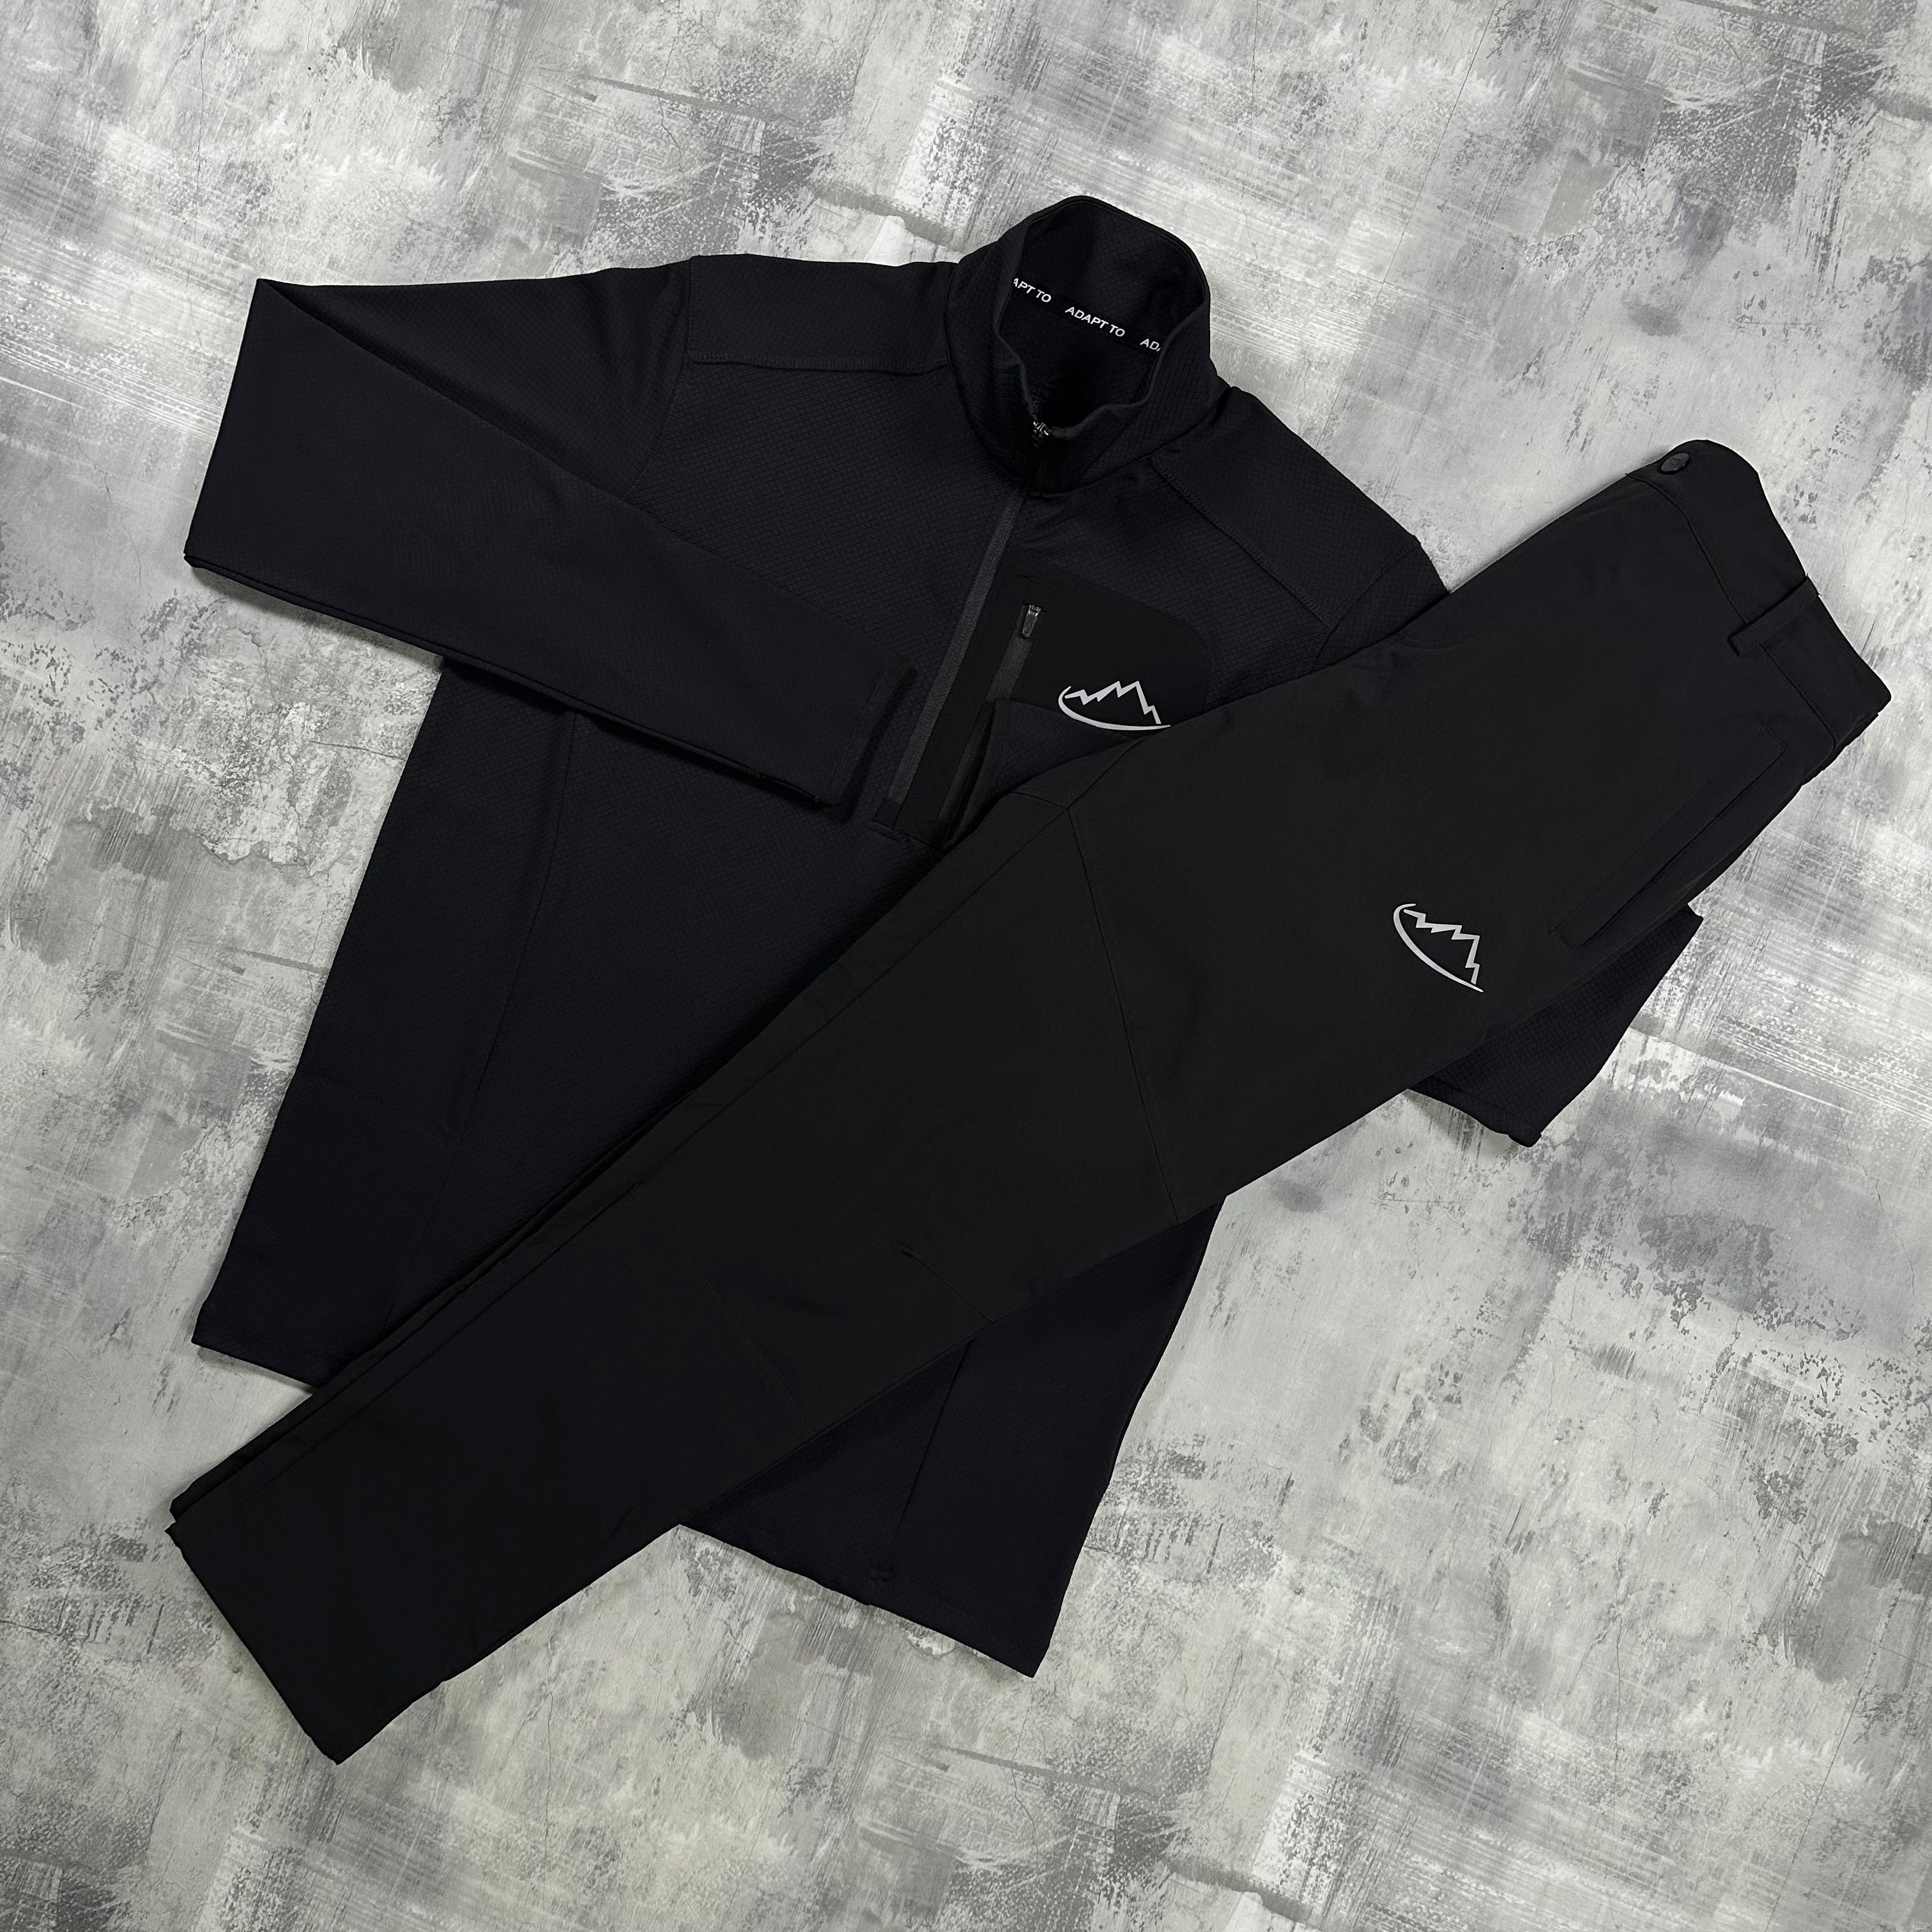 Adapt To Fleece set Black - 1/2 Zip & Trousers